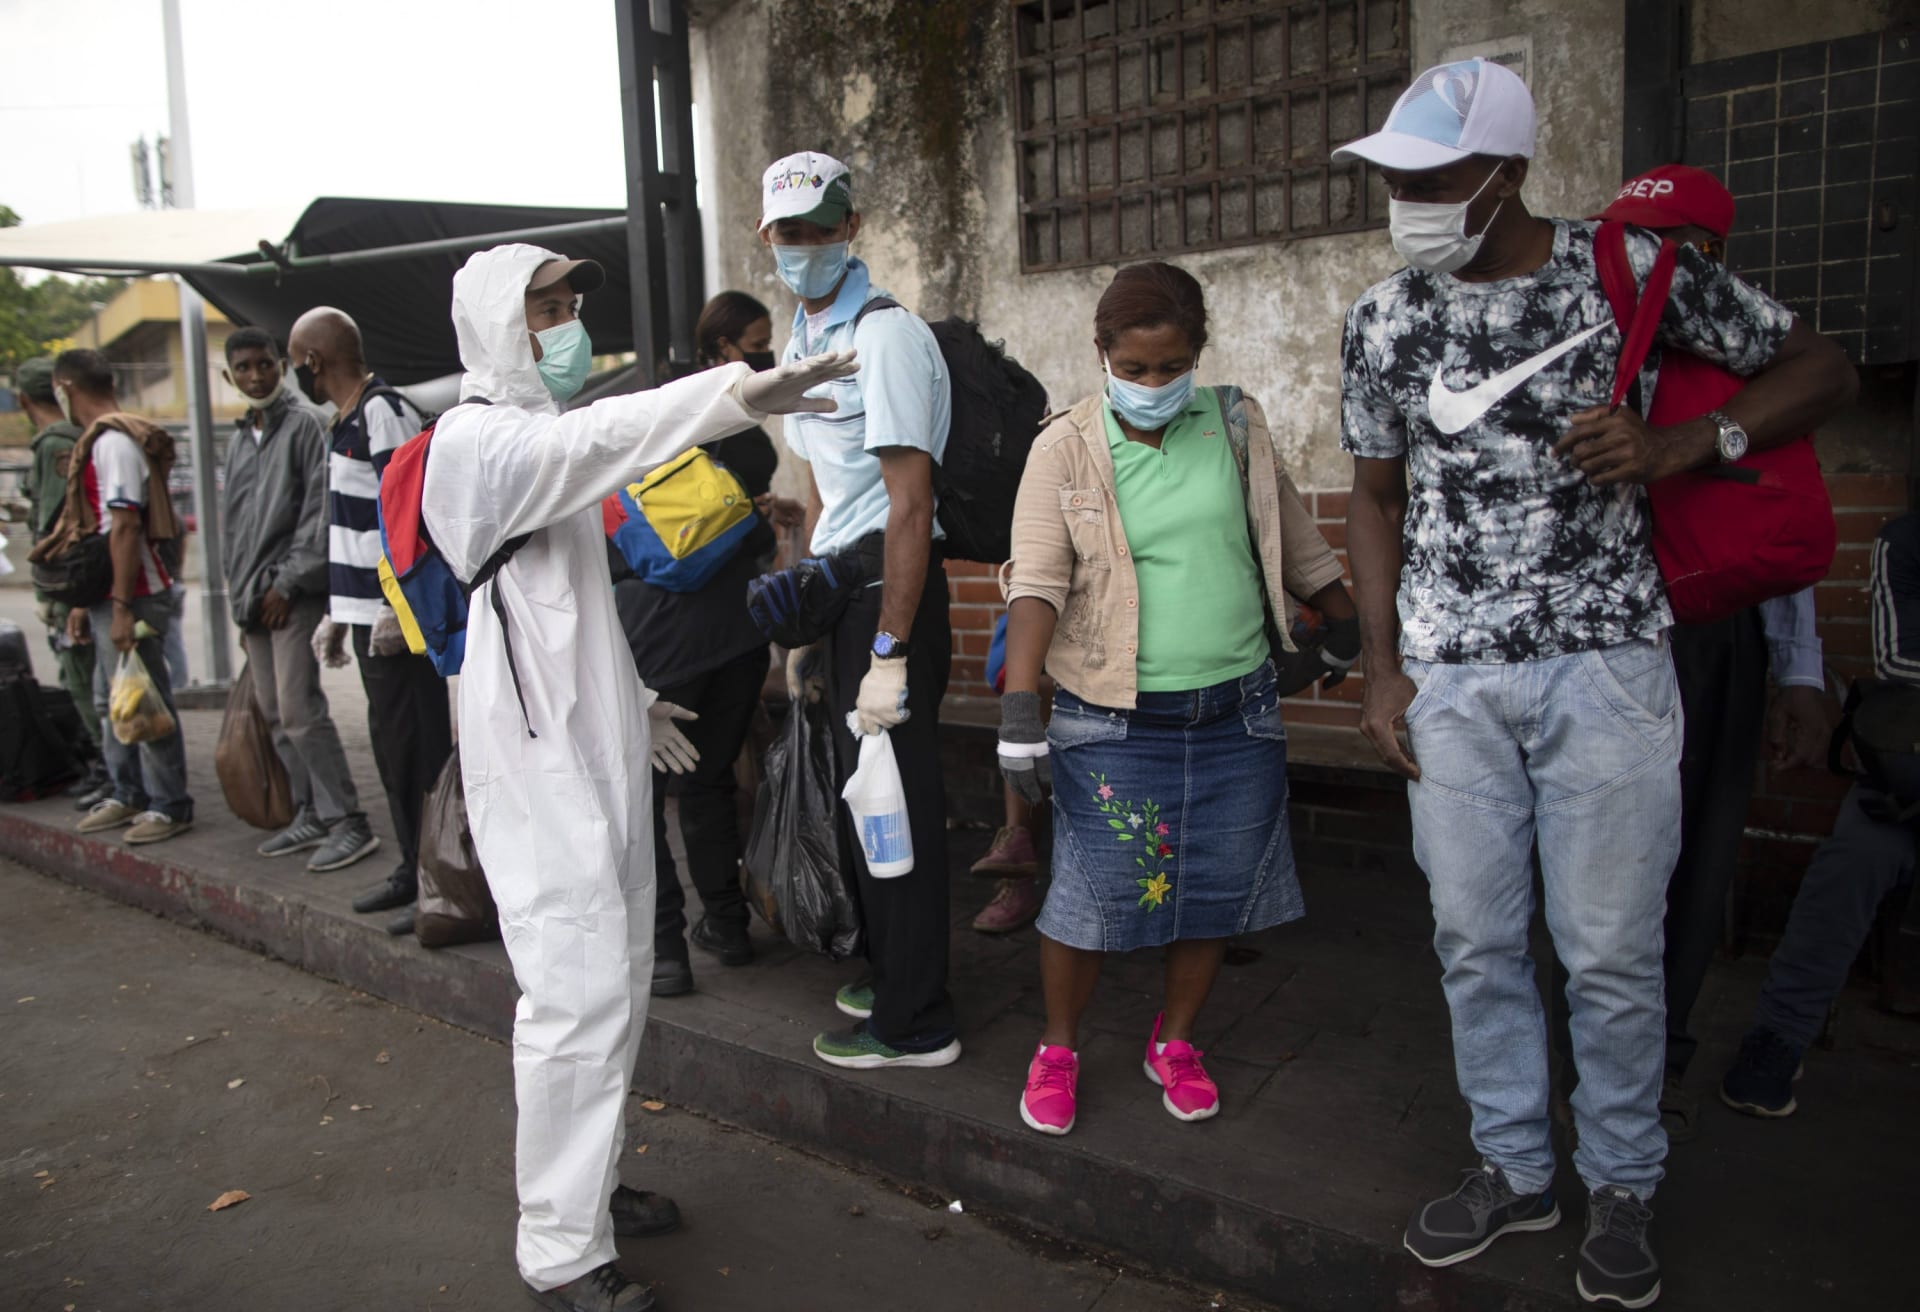 Pandemie koronaviru znamená pro zchudlou Venezuelu humanitární katastrofu